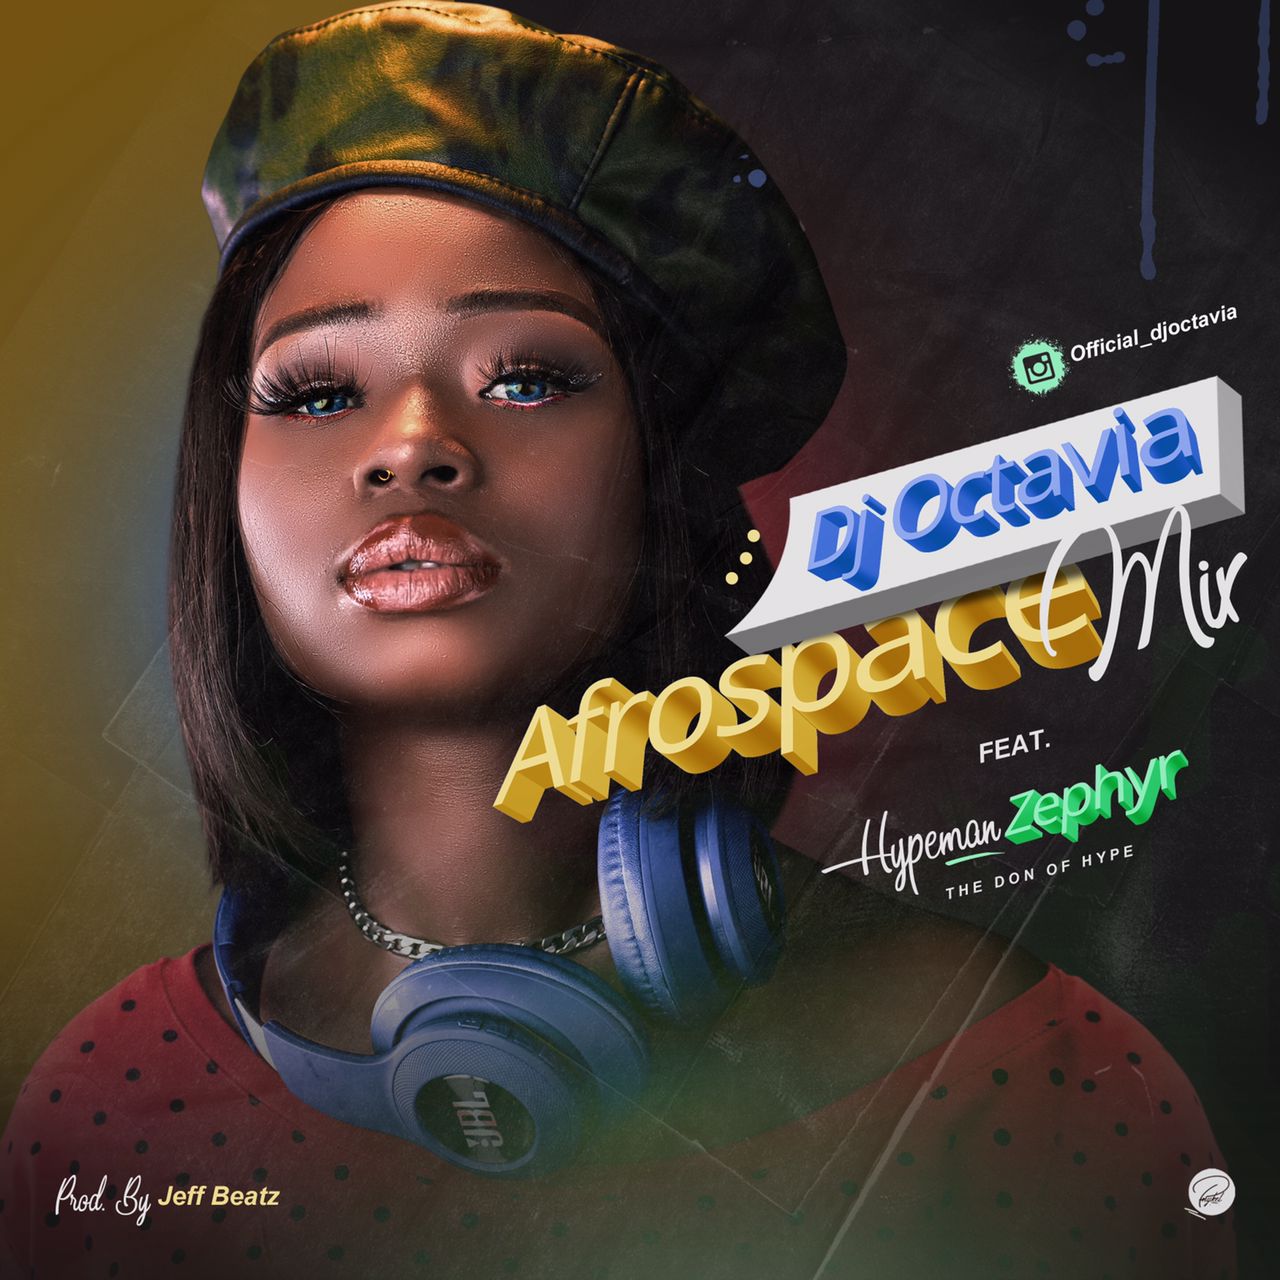 Dj Octavia - Afrospace Mix Feat. Hypeman Zephyr 2